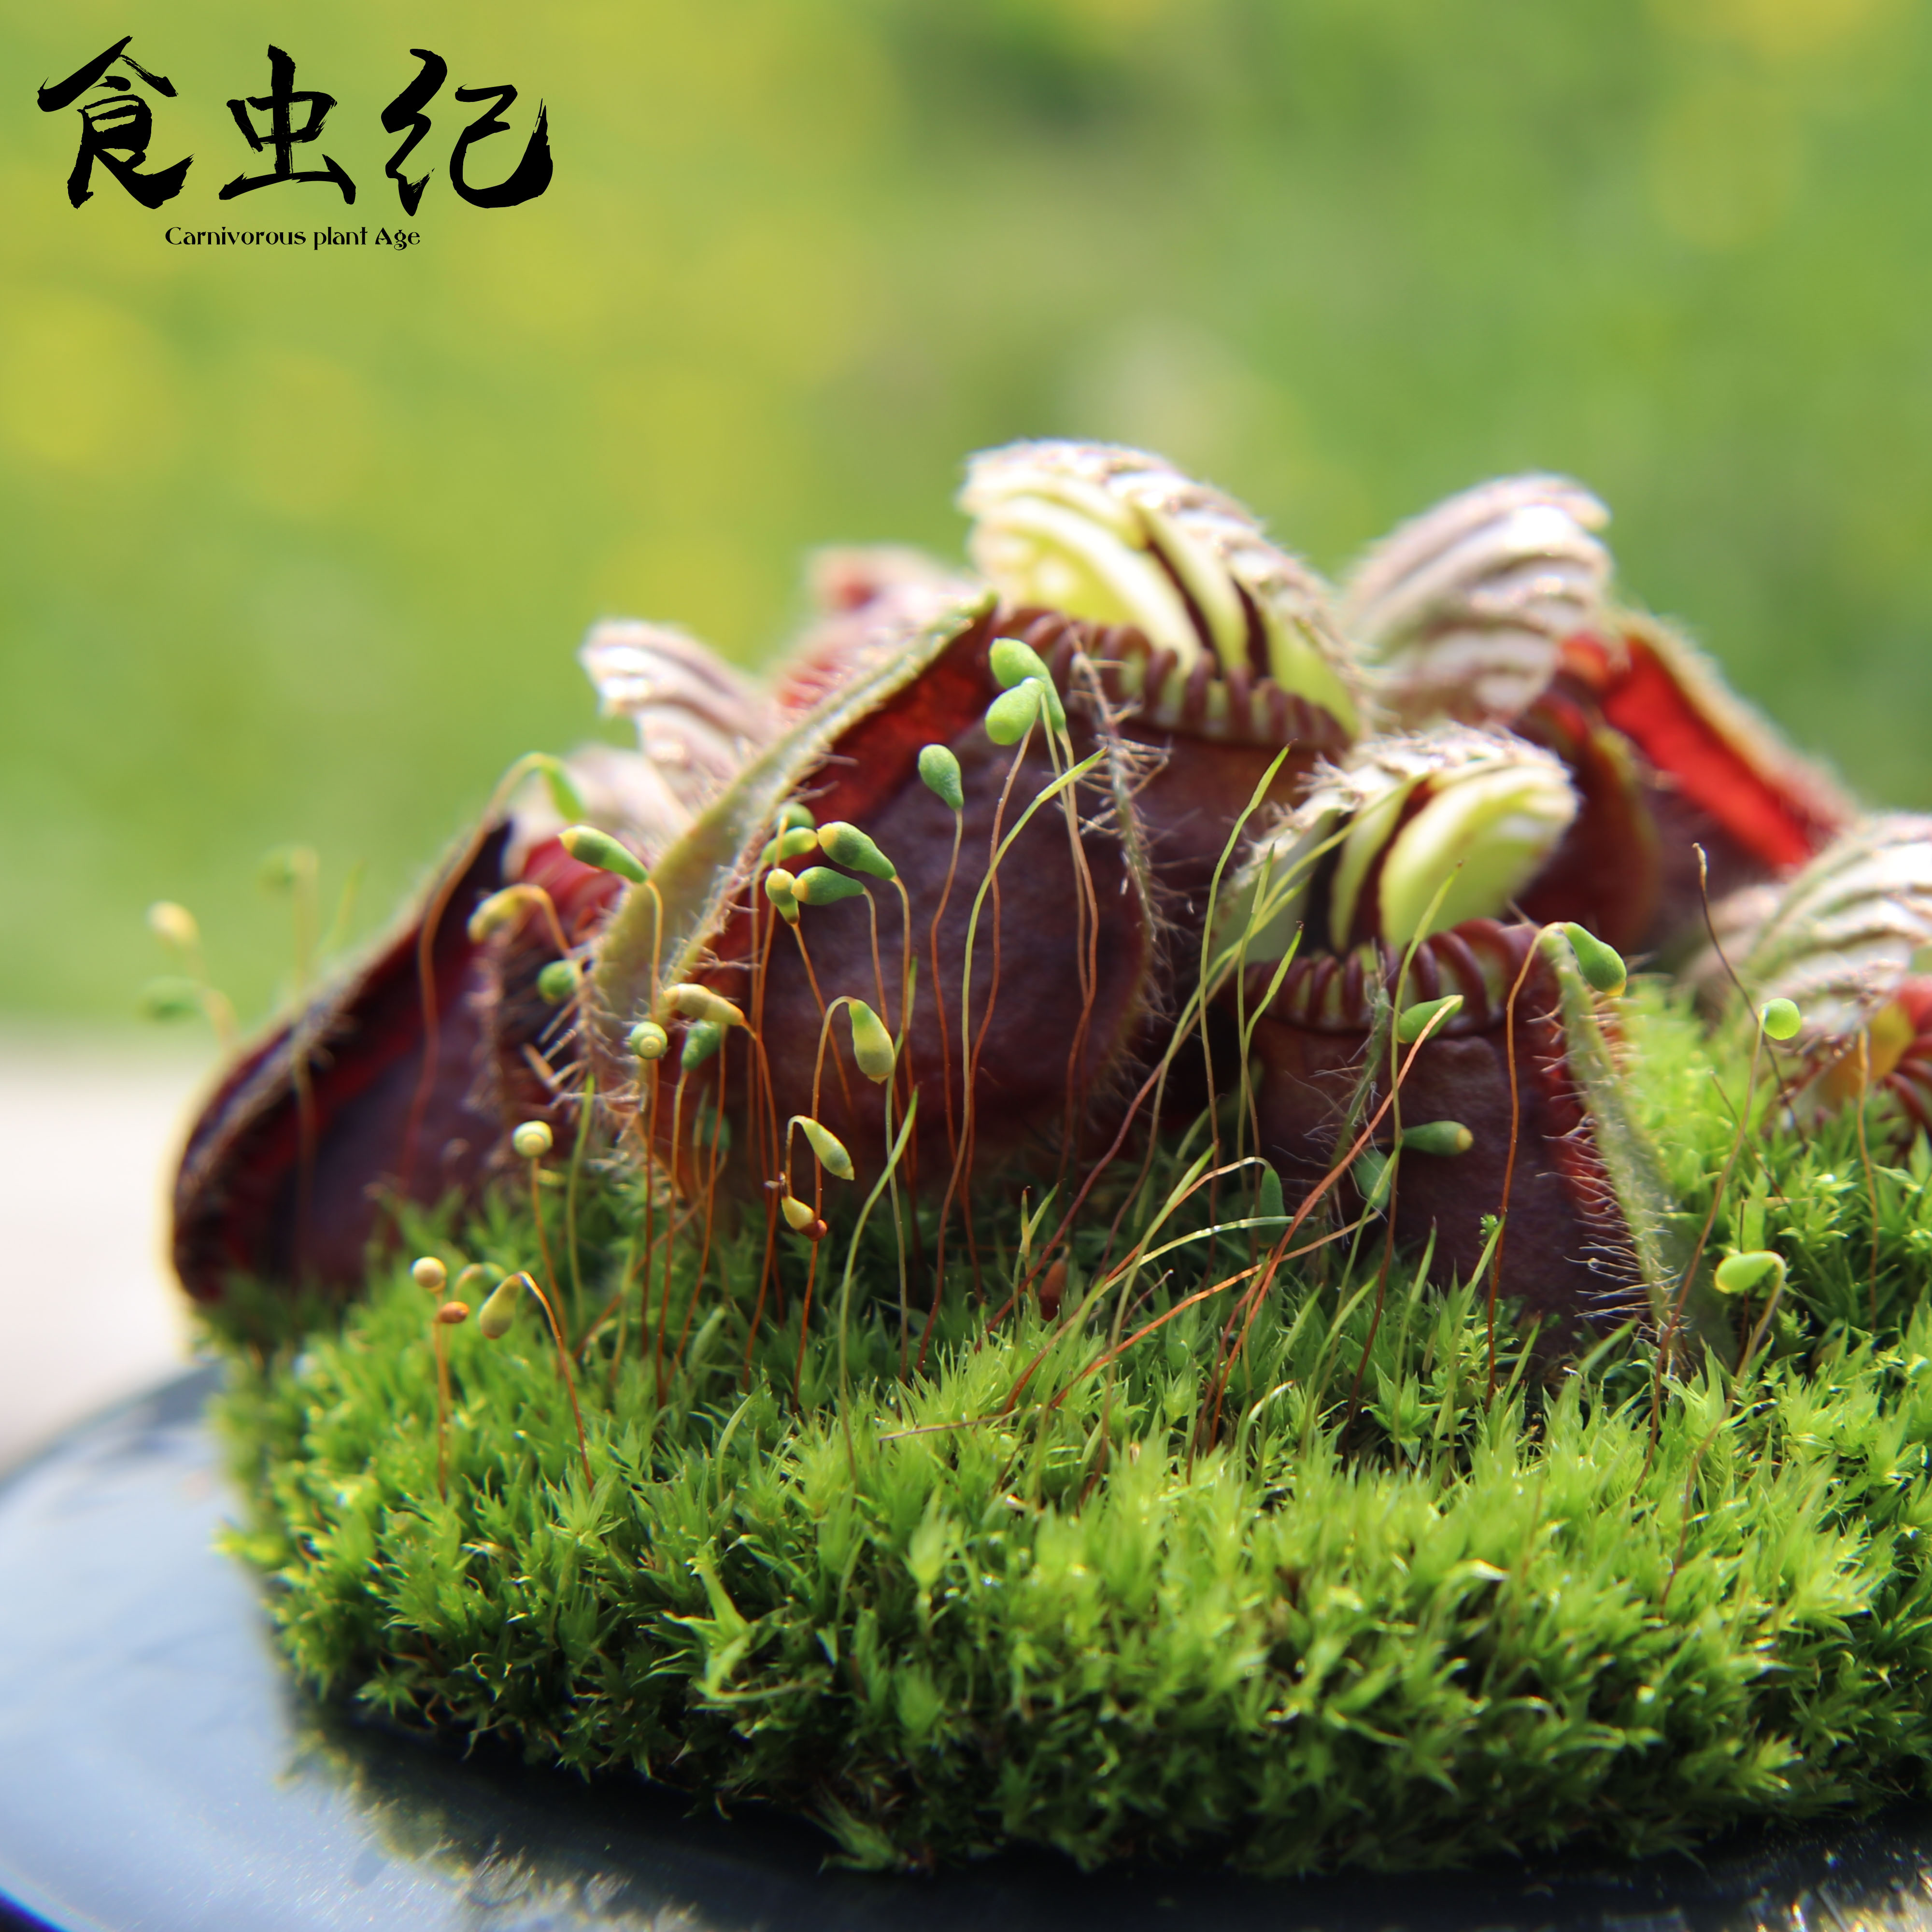 中国の家庭的な蒸し料理を提供する「蒸籠味坊」に蒸籠の使い方を教わったら驚きが満載だった - メシ通 | ホットペッパーグルメ